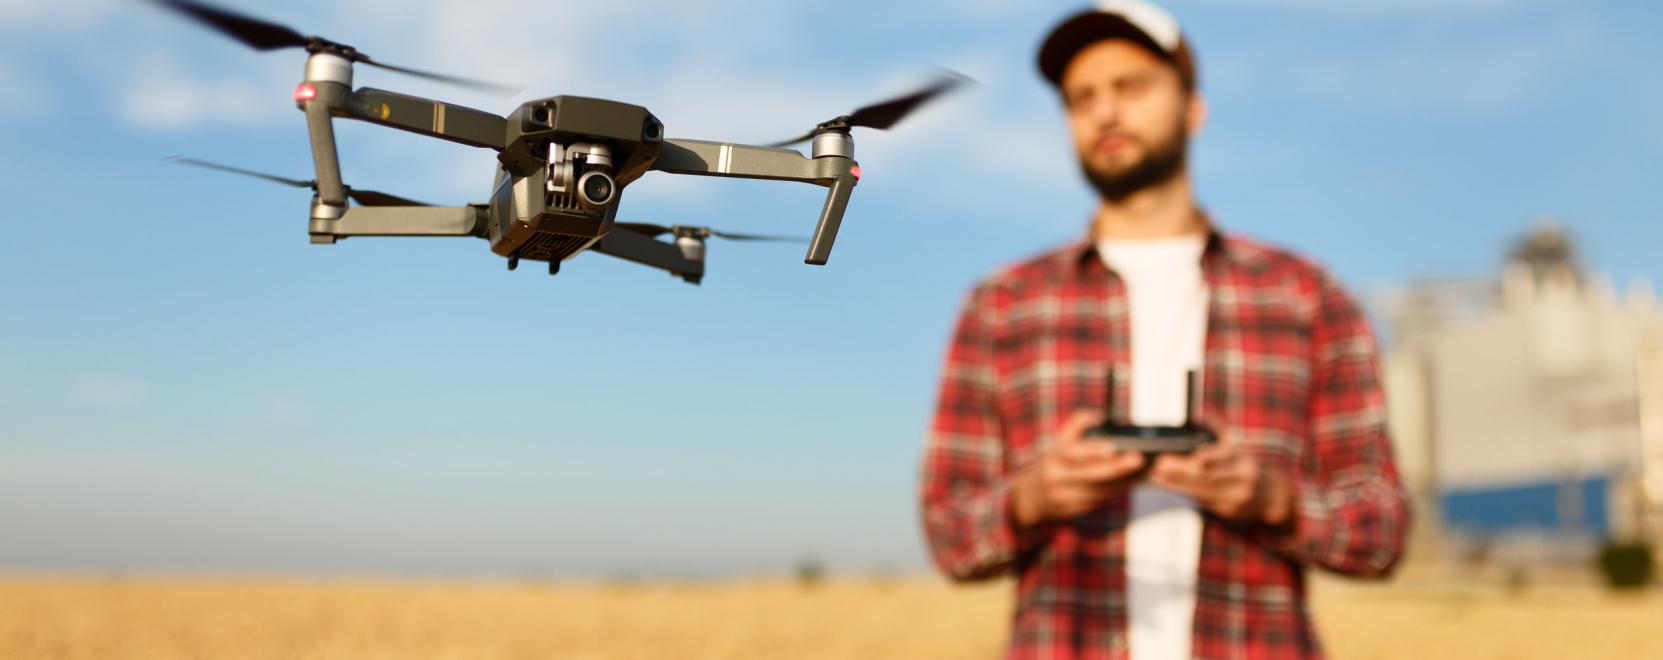 Szigorúbb szabályozás: hogyan lehet drónozni január 1-től?